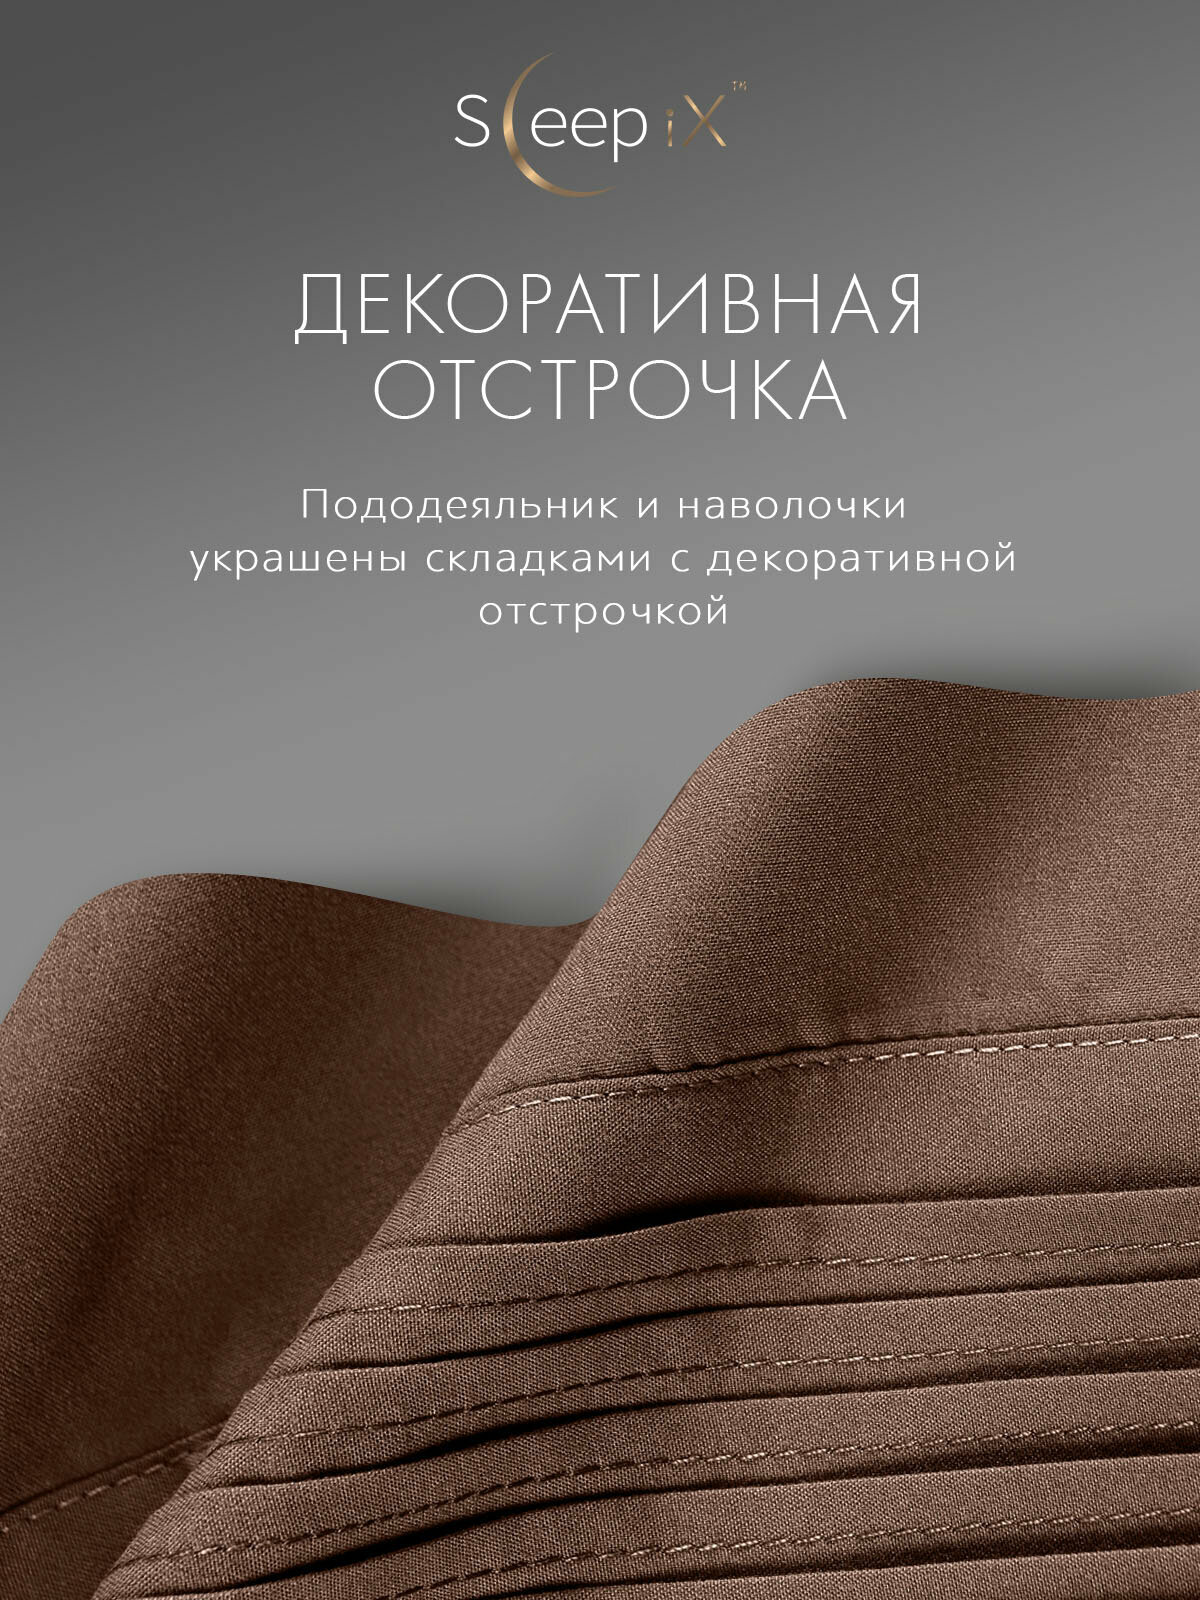 Sleep iX Постельное белье Миоко цвет: коричневый (2 сп. евро)